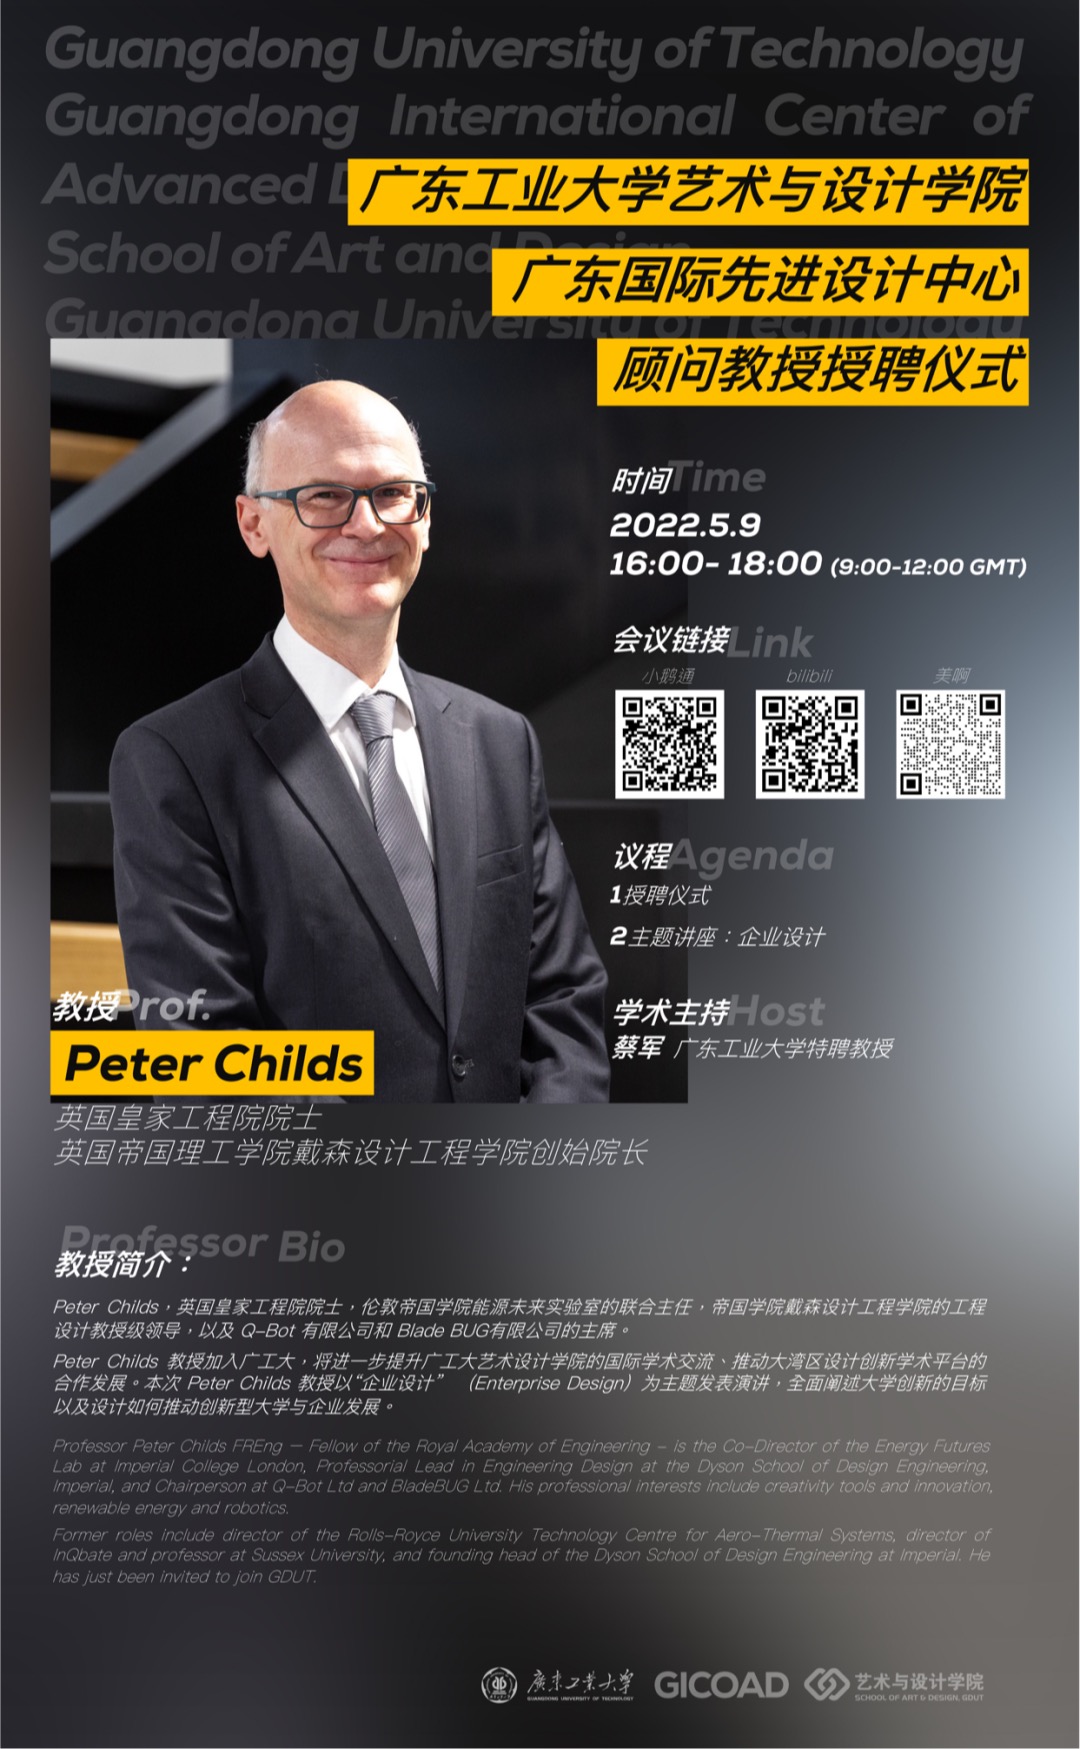 英国皇家工程院院士、戴森设计工程学院Peter Childs加盟广东工业大学艺术与设计学院并将发表系列讲座！